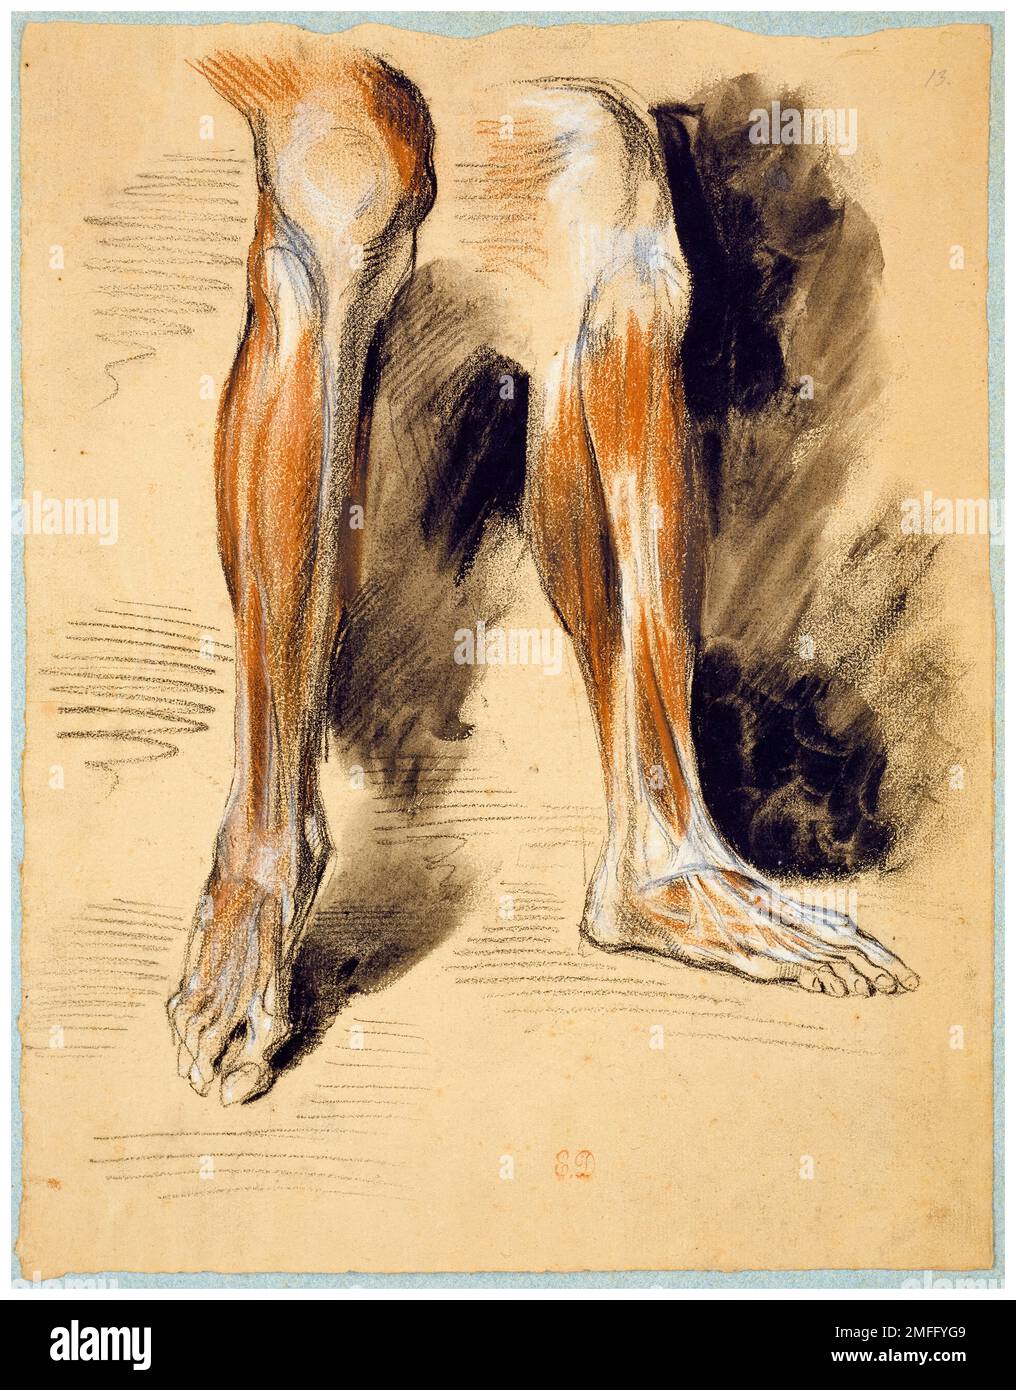 Eugene Delacroix, Studi di una gamba destra, (Studi anatomici), disegno in gesso con inchiostro e pennello, 1835-1849 Foto Stock